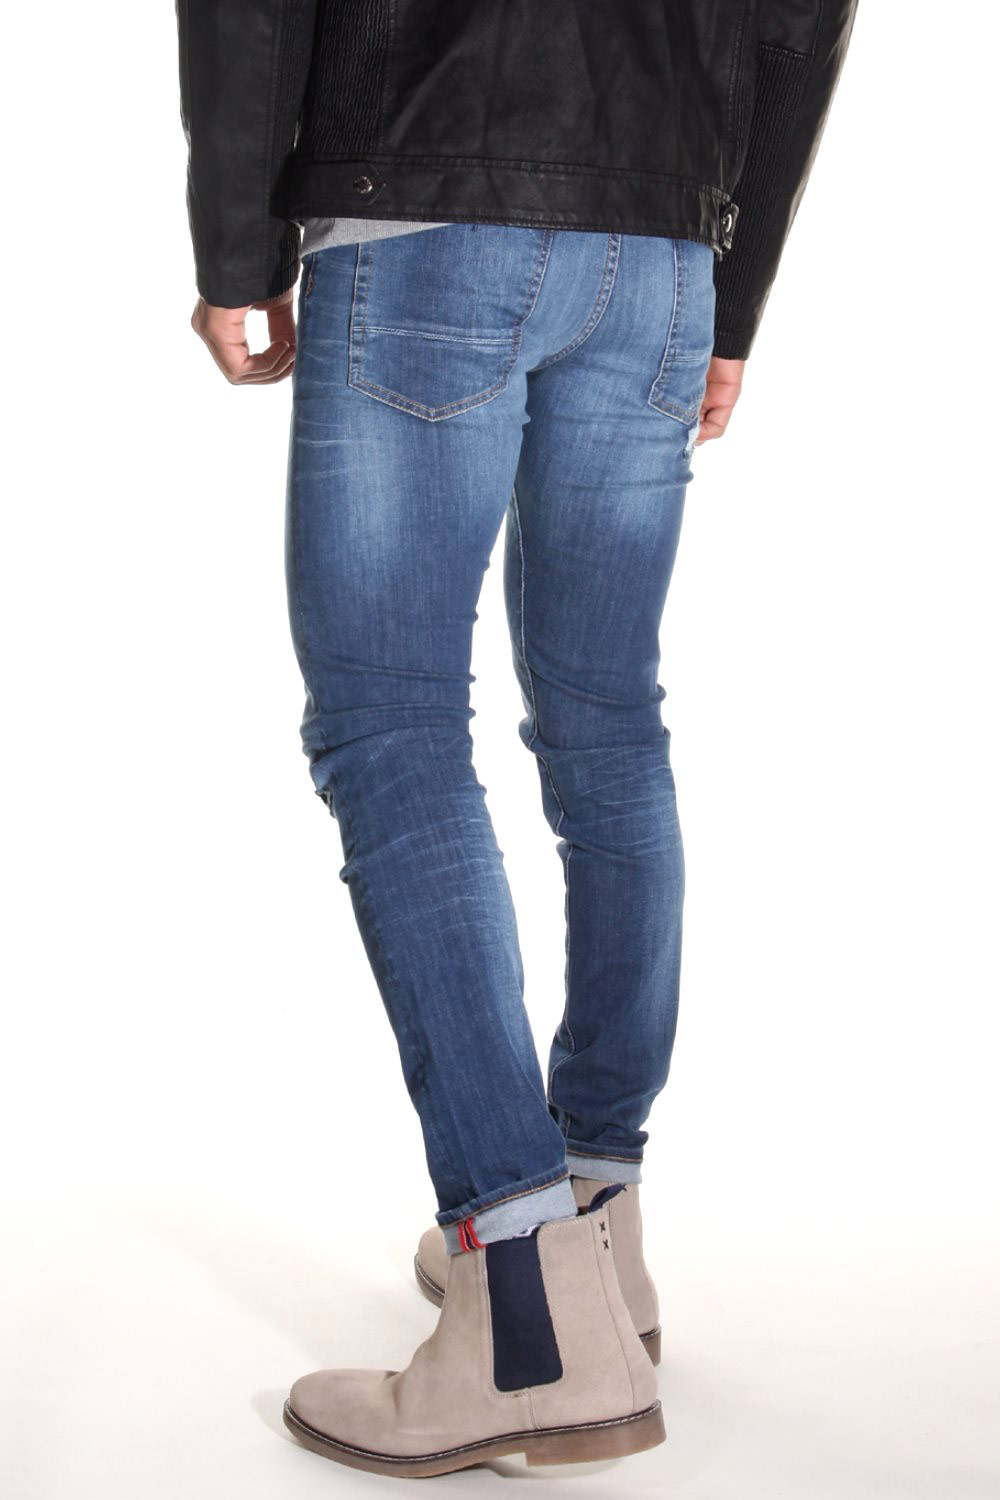 KAPORAL MAN Jeans auf oboy.de